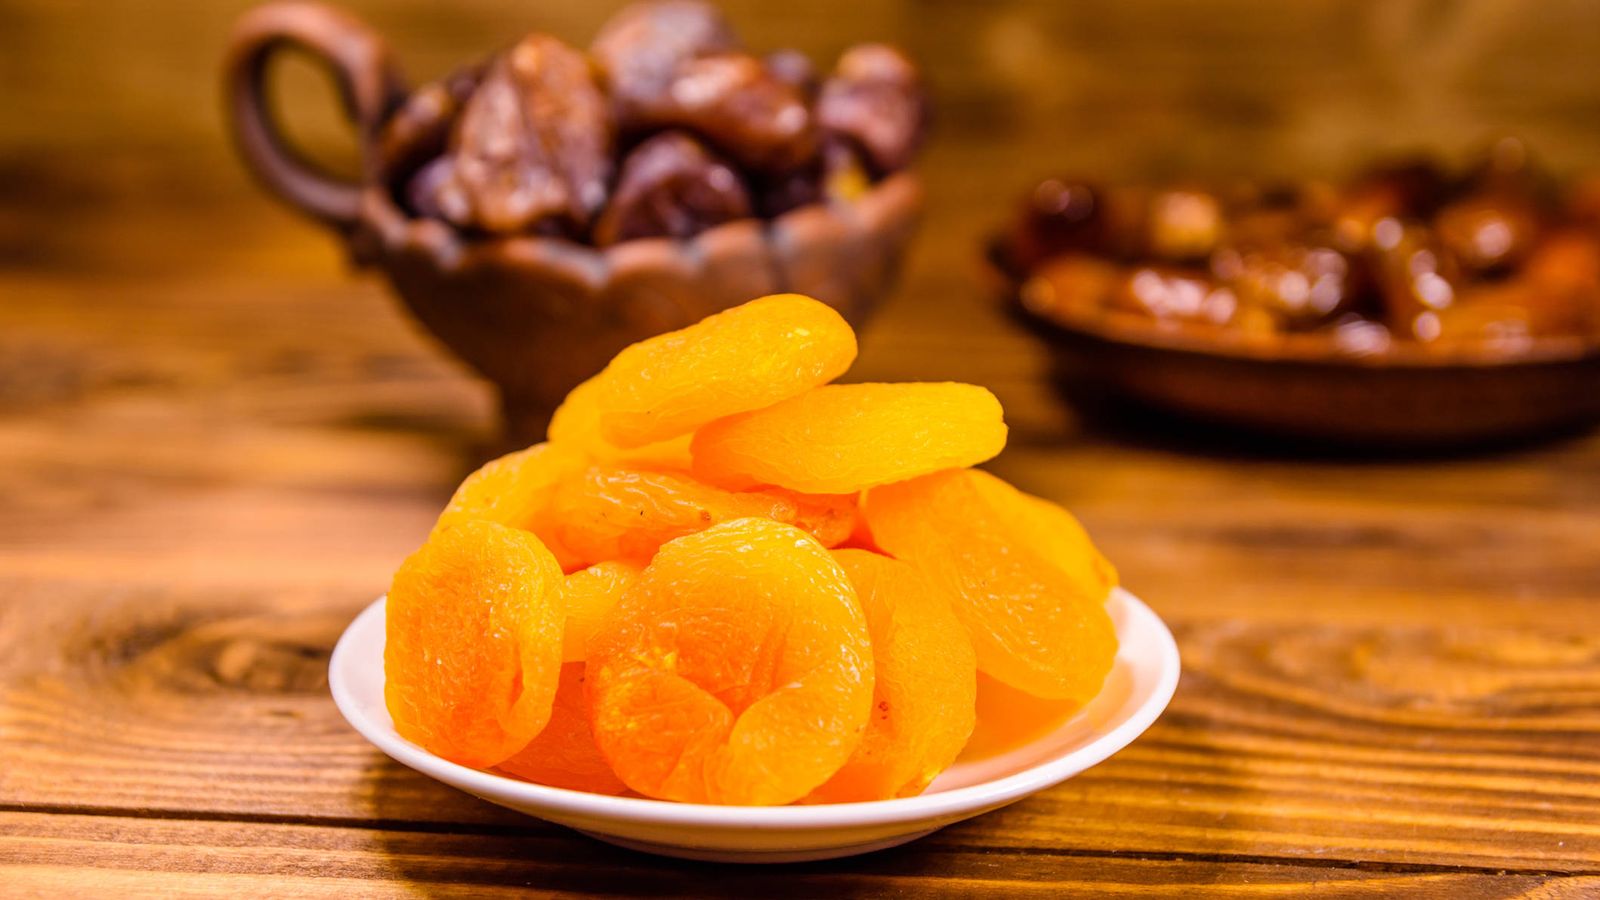 Son de verdad saludables las frutas deshidratadas?